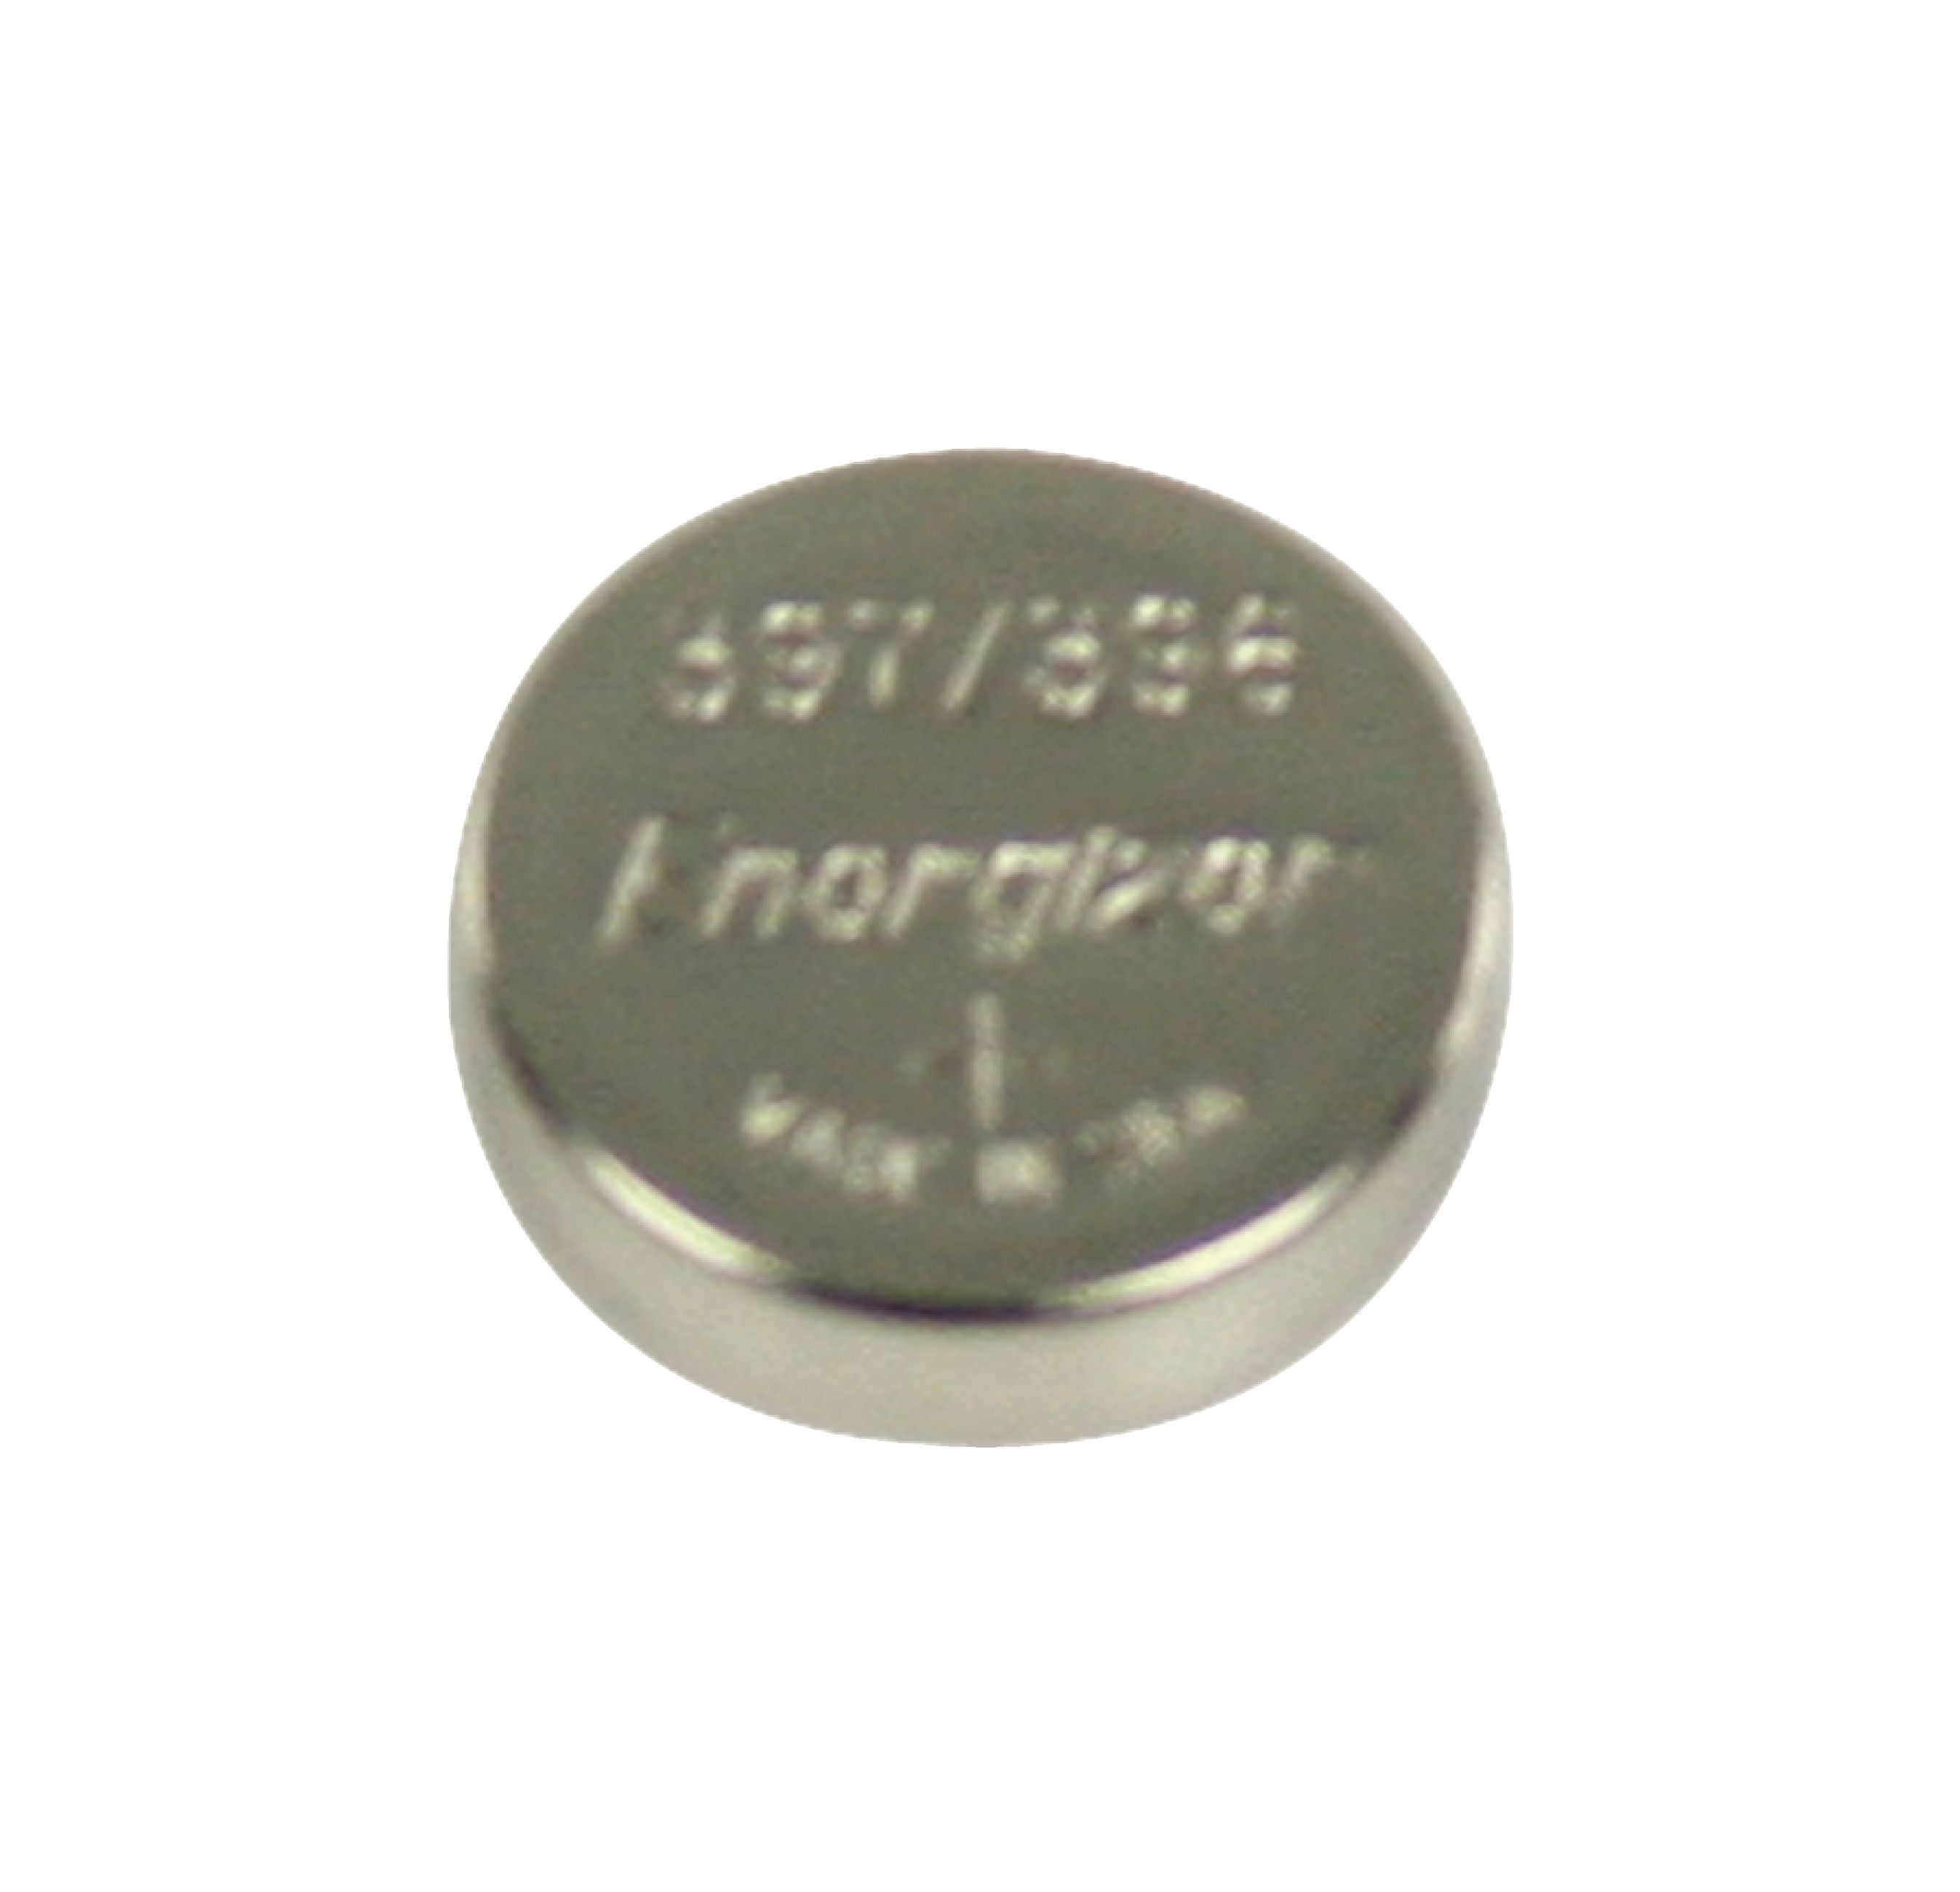 Stříbro-oxidová hodinková baterie SR59/V397 1.55 V 33 mAh, Energizer EN397/396P1